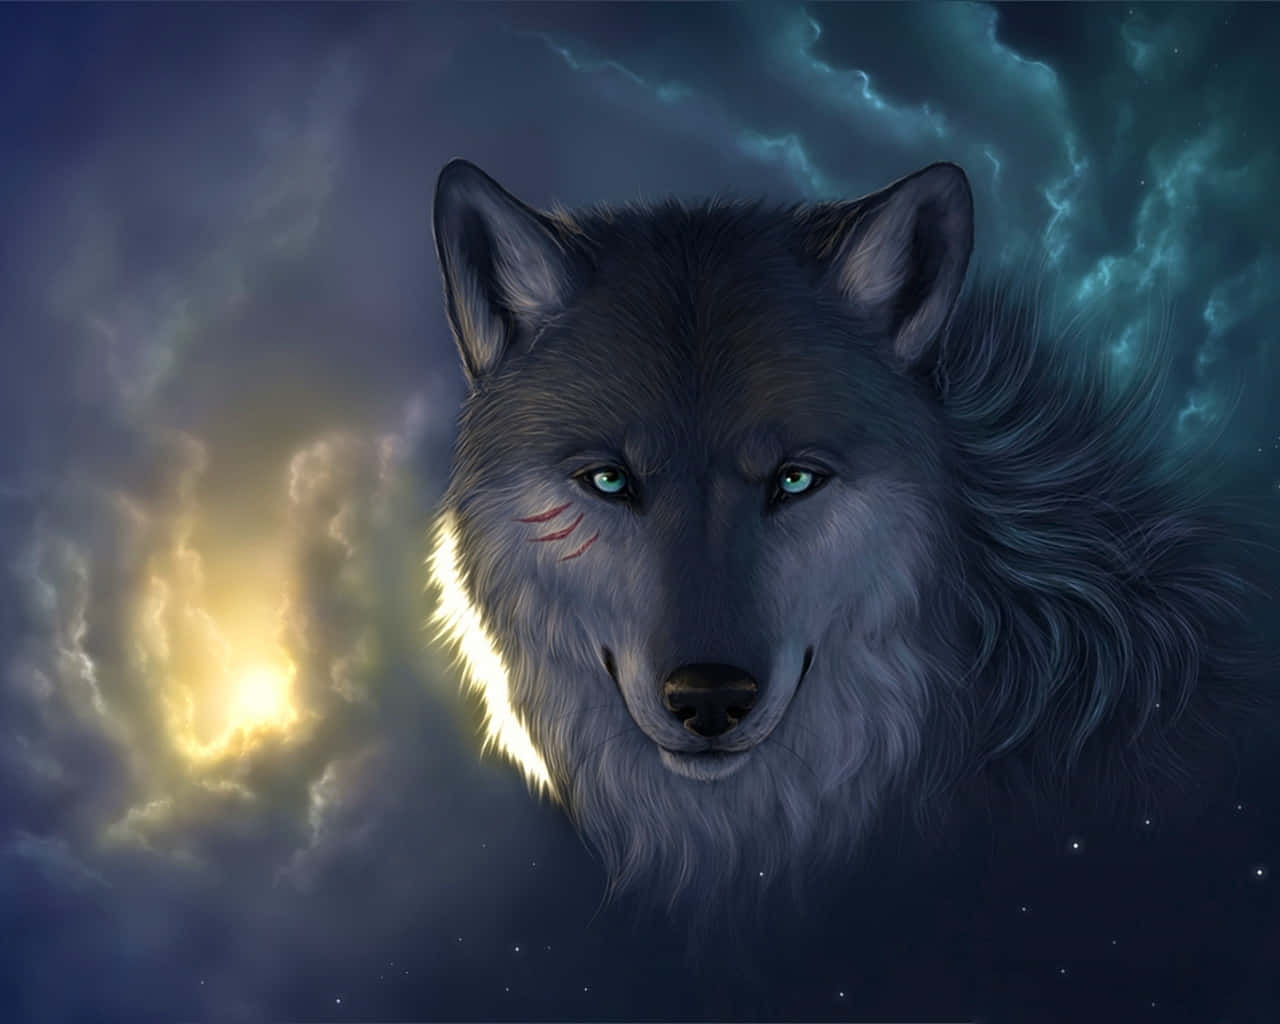 Captivating Nighttime Wolf Art Wallpaper